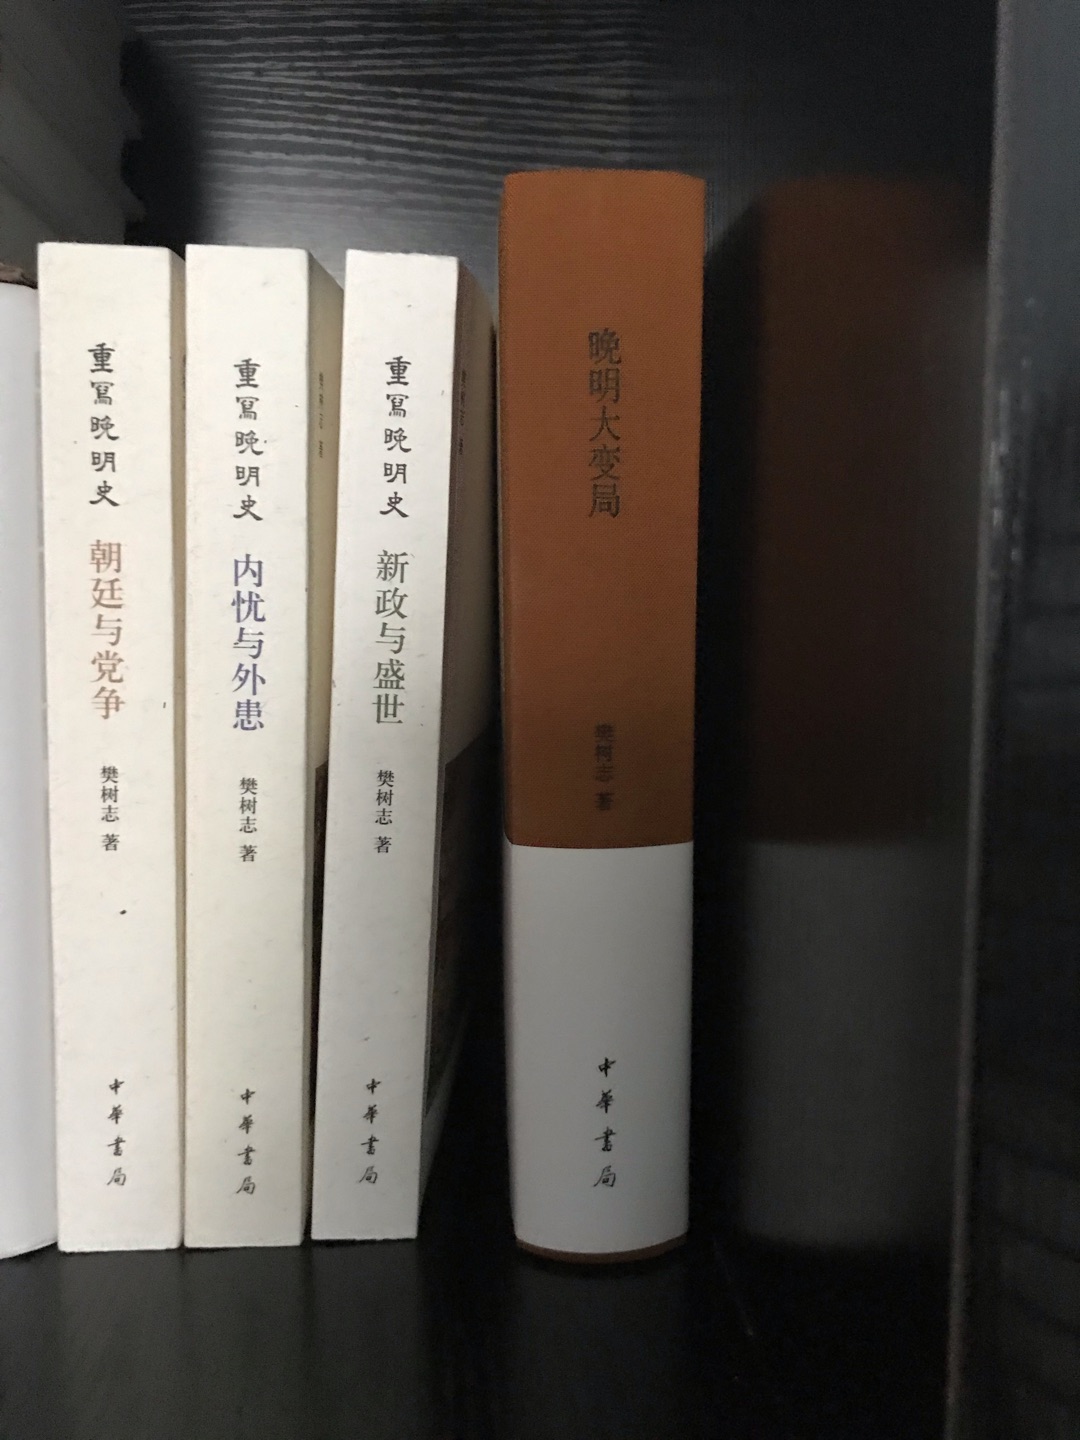 了解学习晩明历史很好的一本书，中华书局出版的质量也很不错，值得收藏阅读，期待最后一本王朝的末路。